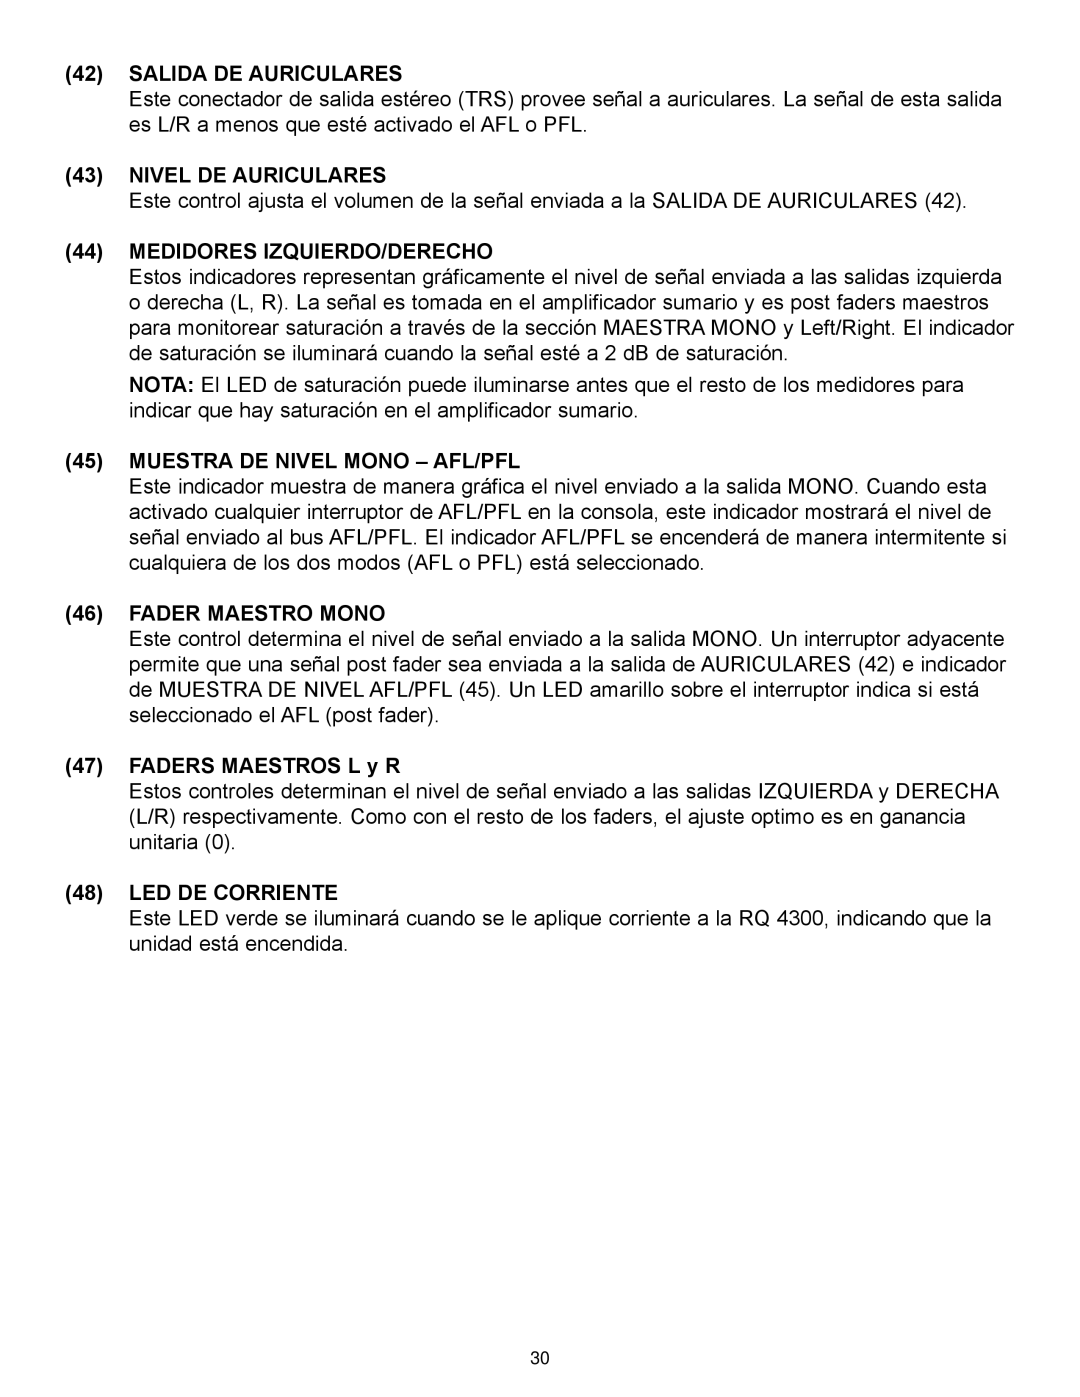 Peavey RQ 4300 Series manual Salida De Auriculares, Nivel De Auriculares, Medidores Izquierdo/Derecho, Fader Maestro Mono 